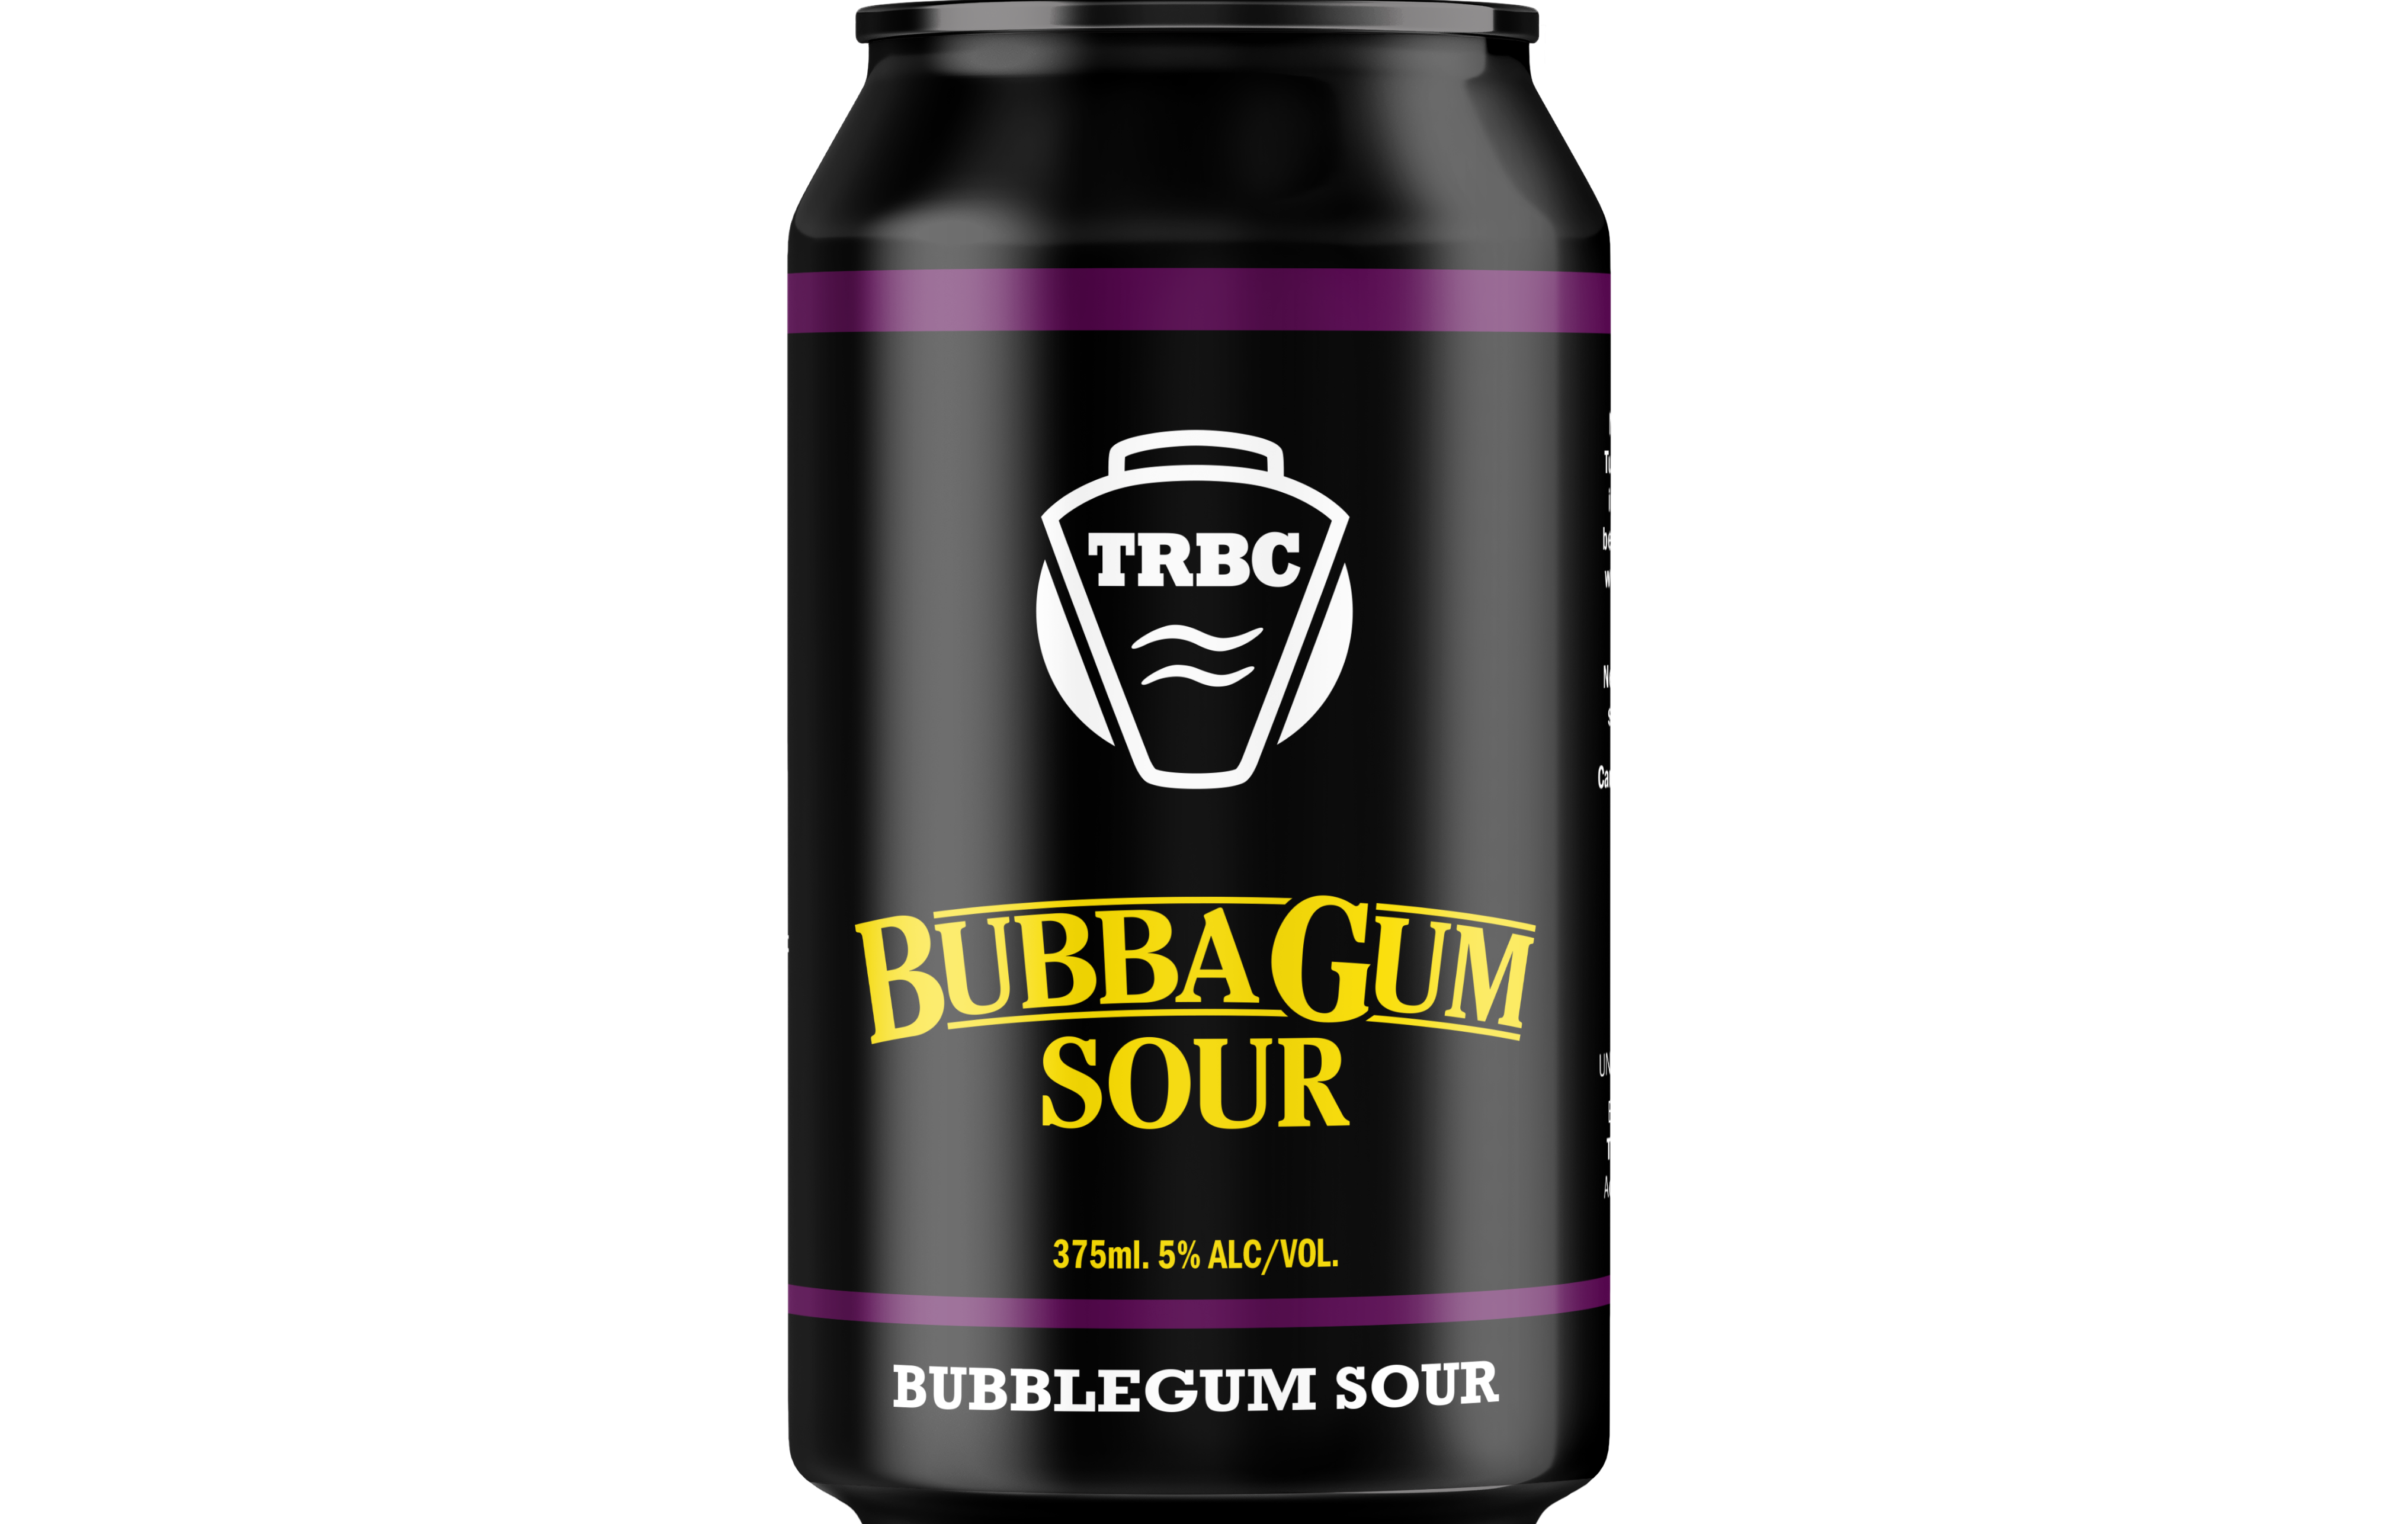 Bubba Gum Sour